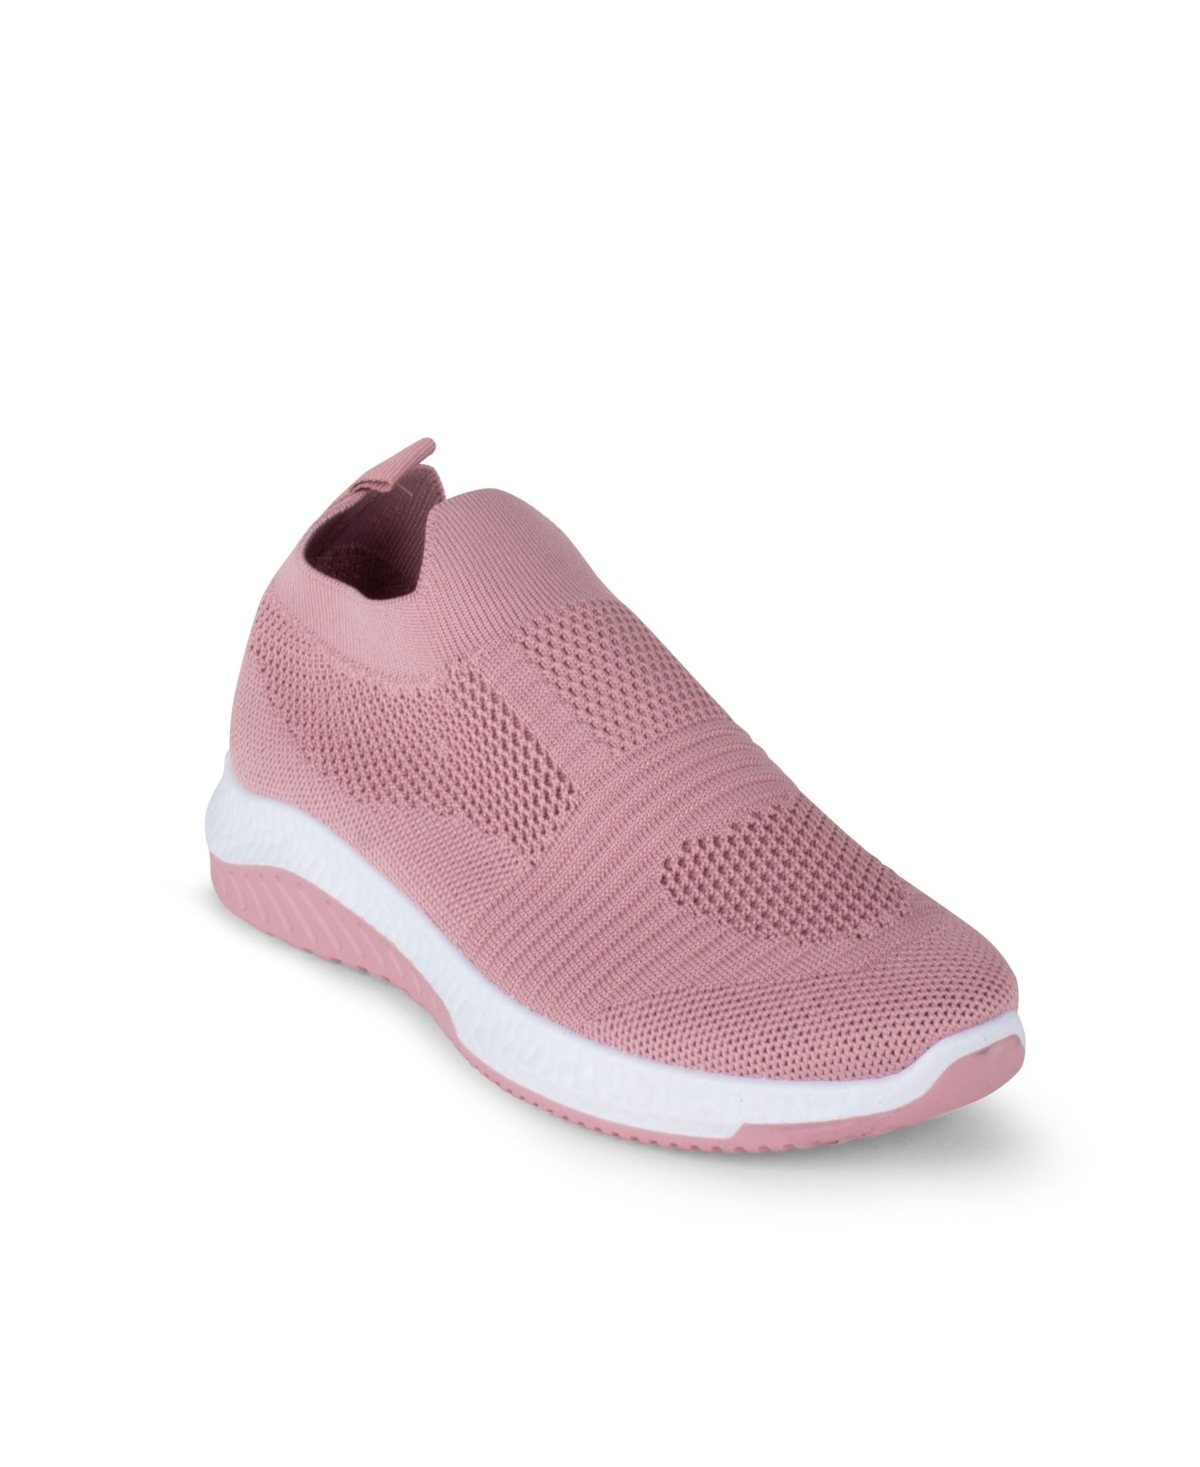 Danskin Women's Cheerful Slip-on Sneaker Women's Shoes